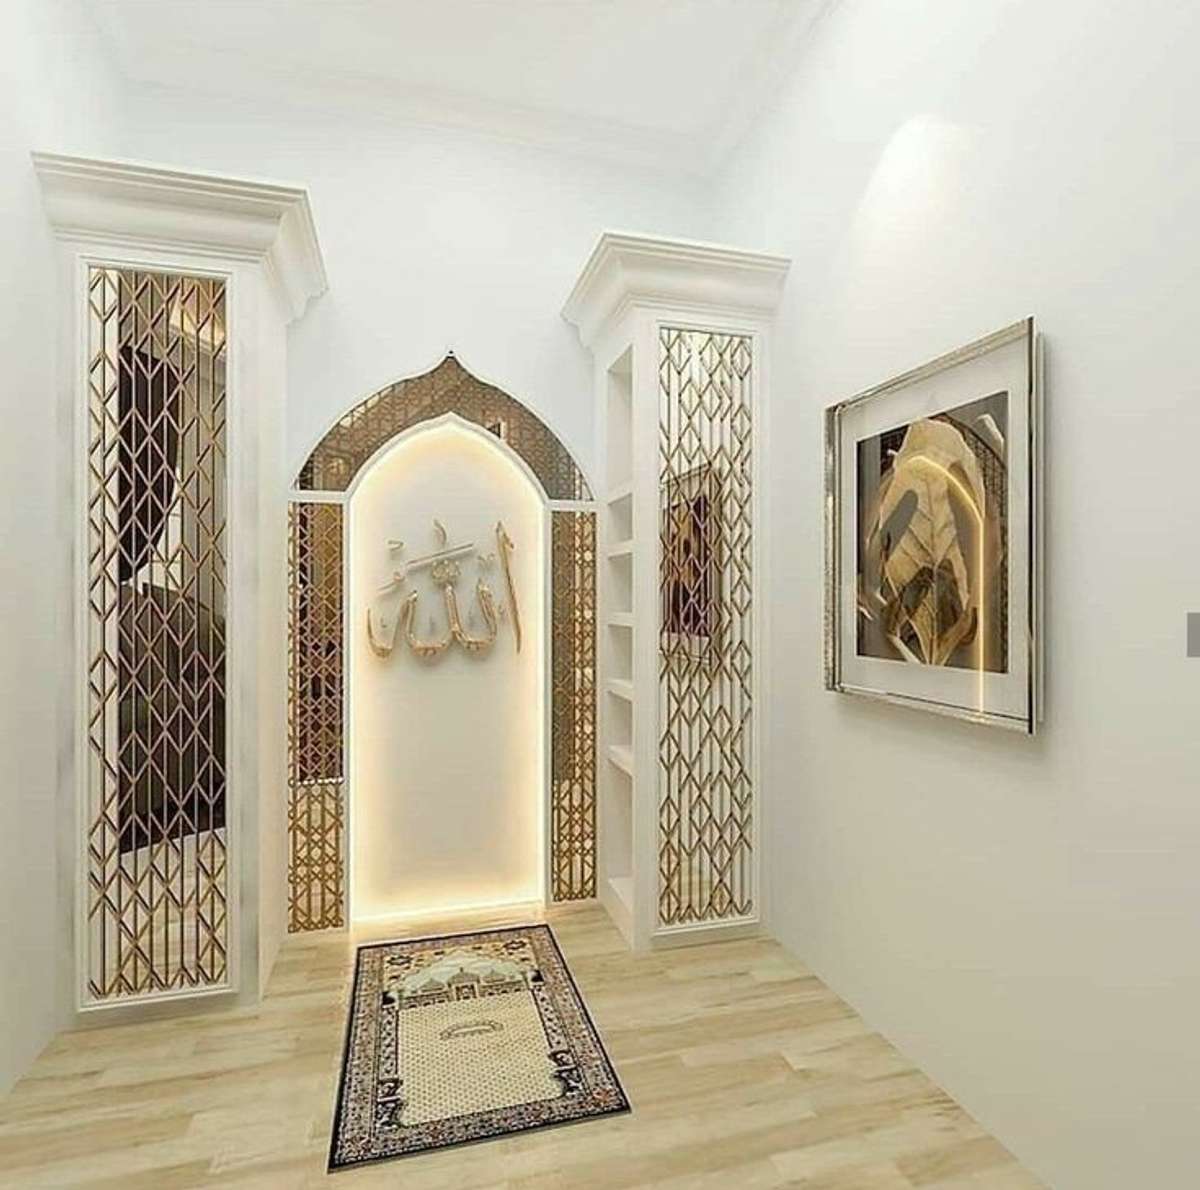 Prayer Room, Storage Designs by Carpenter Kerala Carpenters, Ernakulam | Kolo